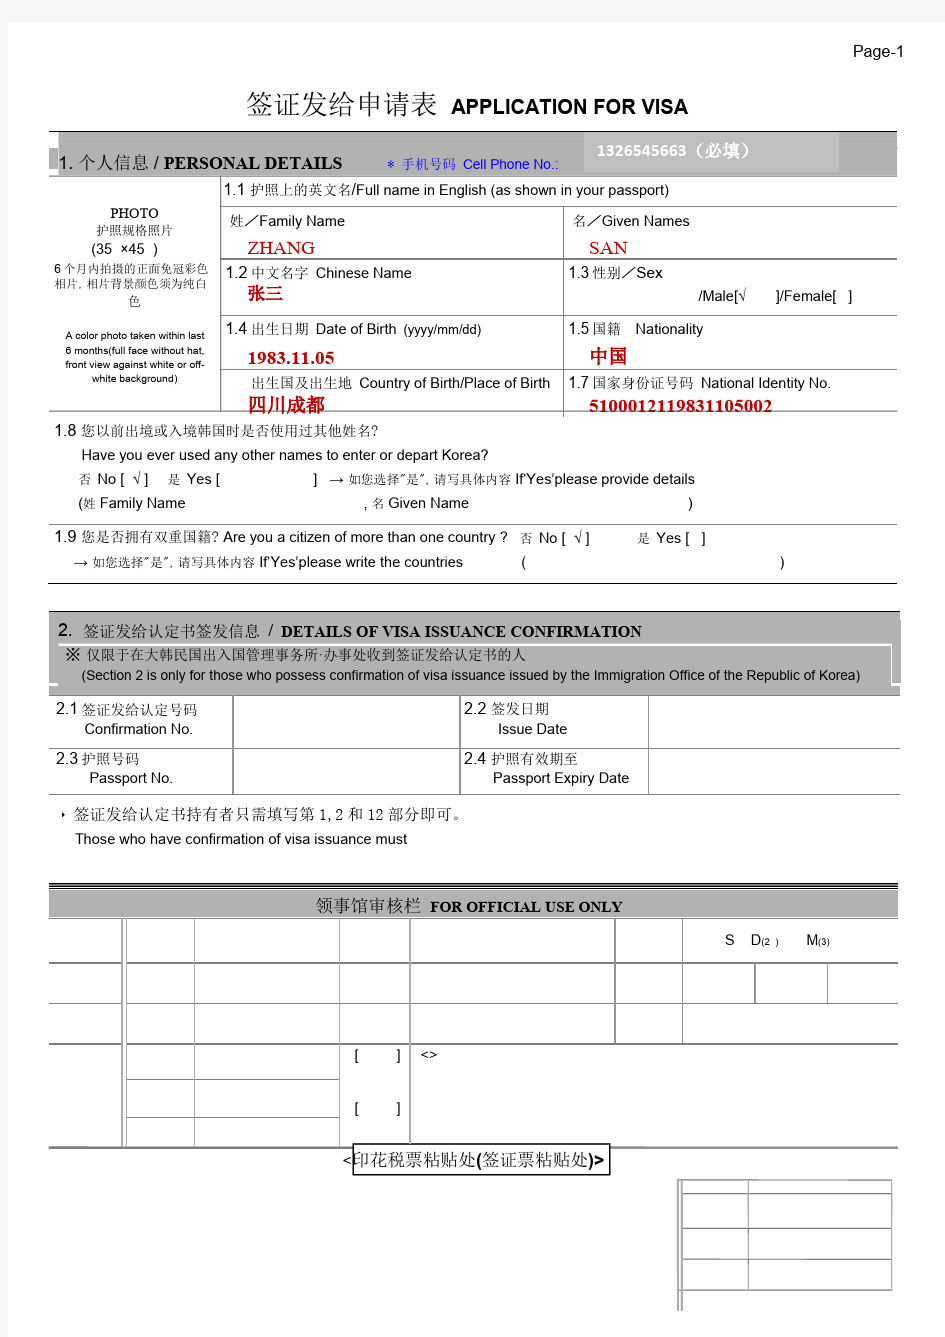 2018年 B-2韩国签证申请表模板